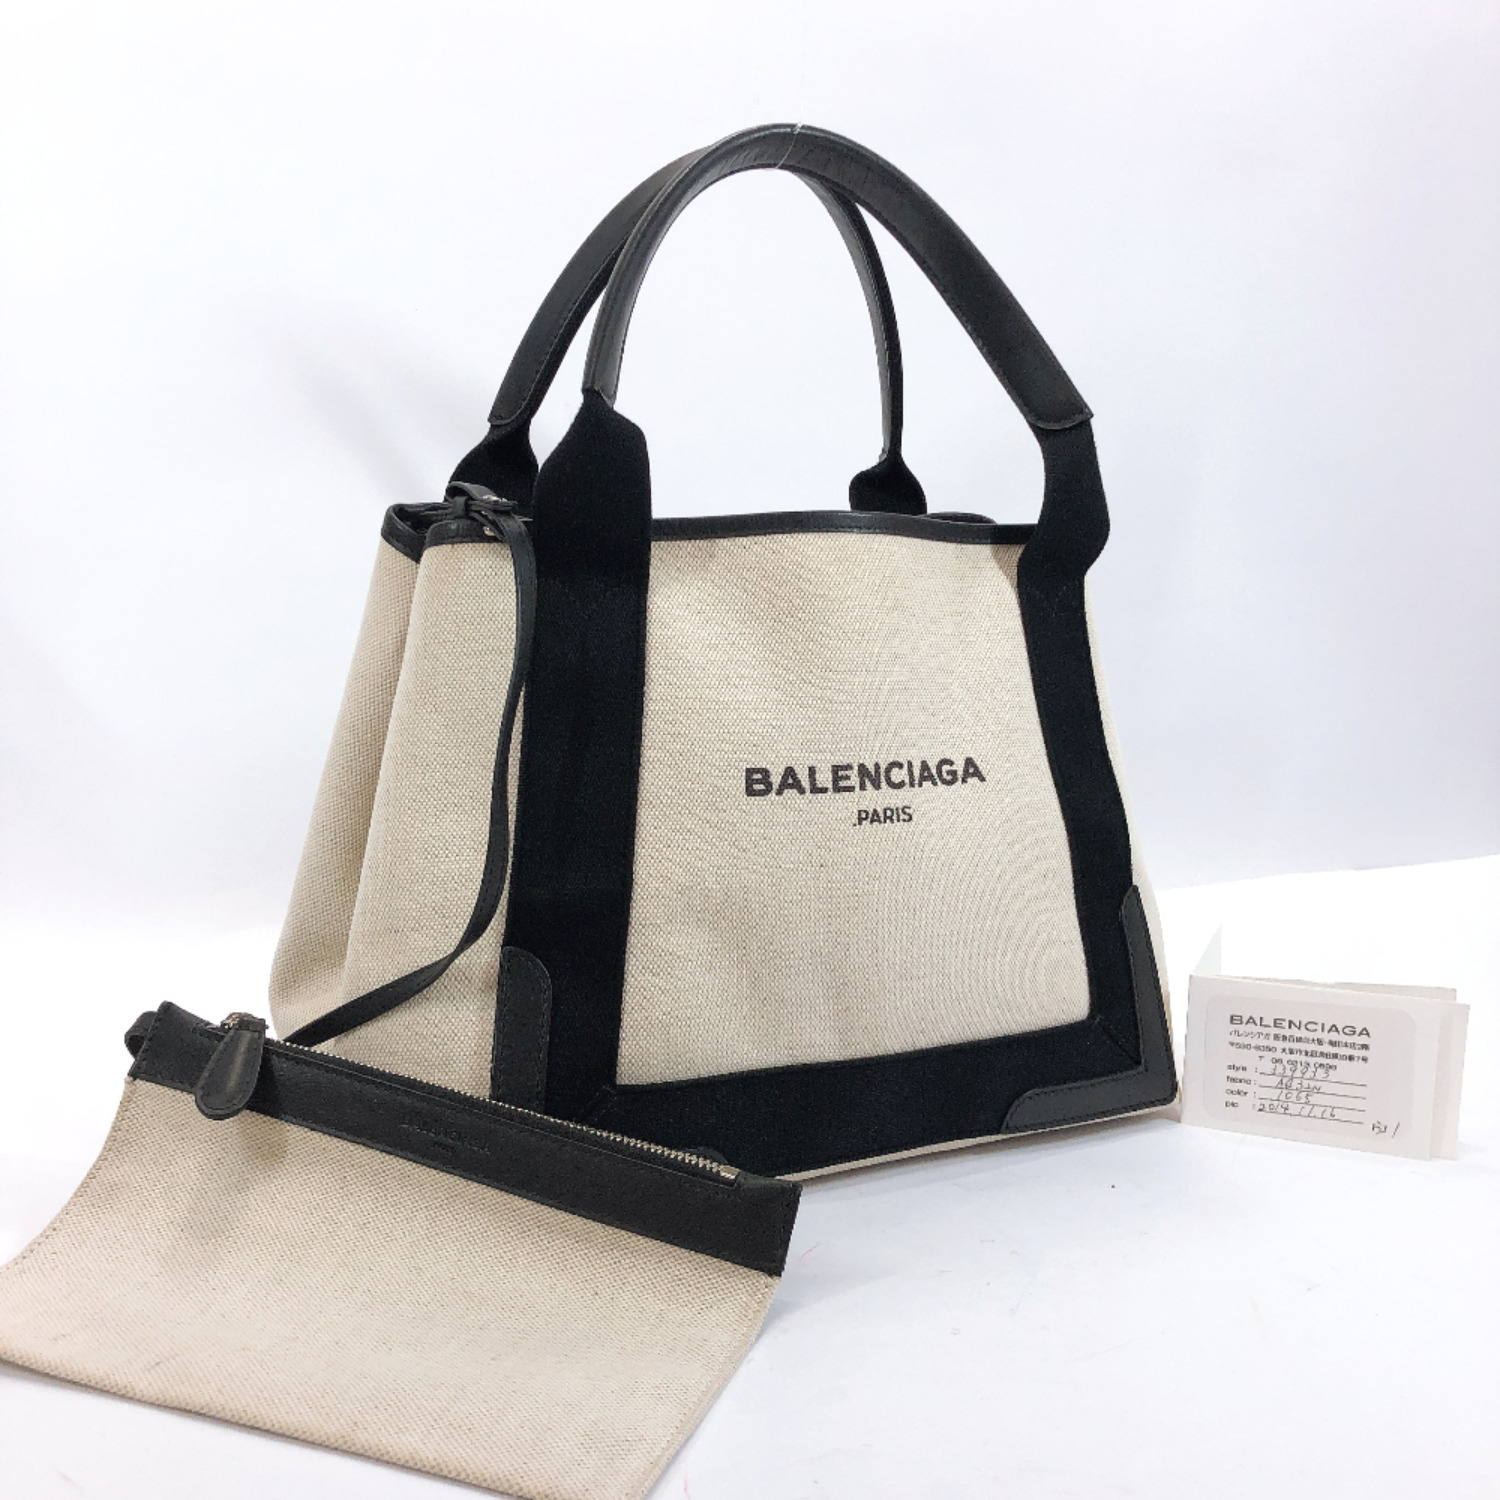 Balenciaga Handbags & Purses For Women | semashow.com